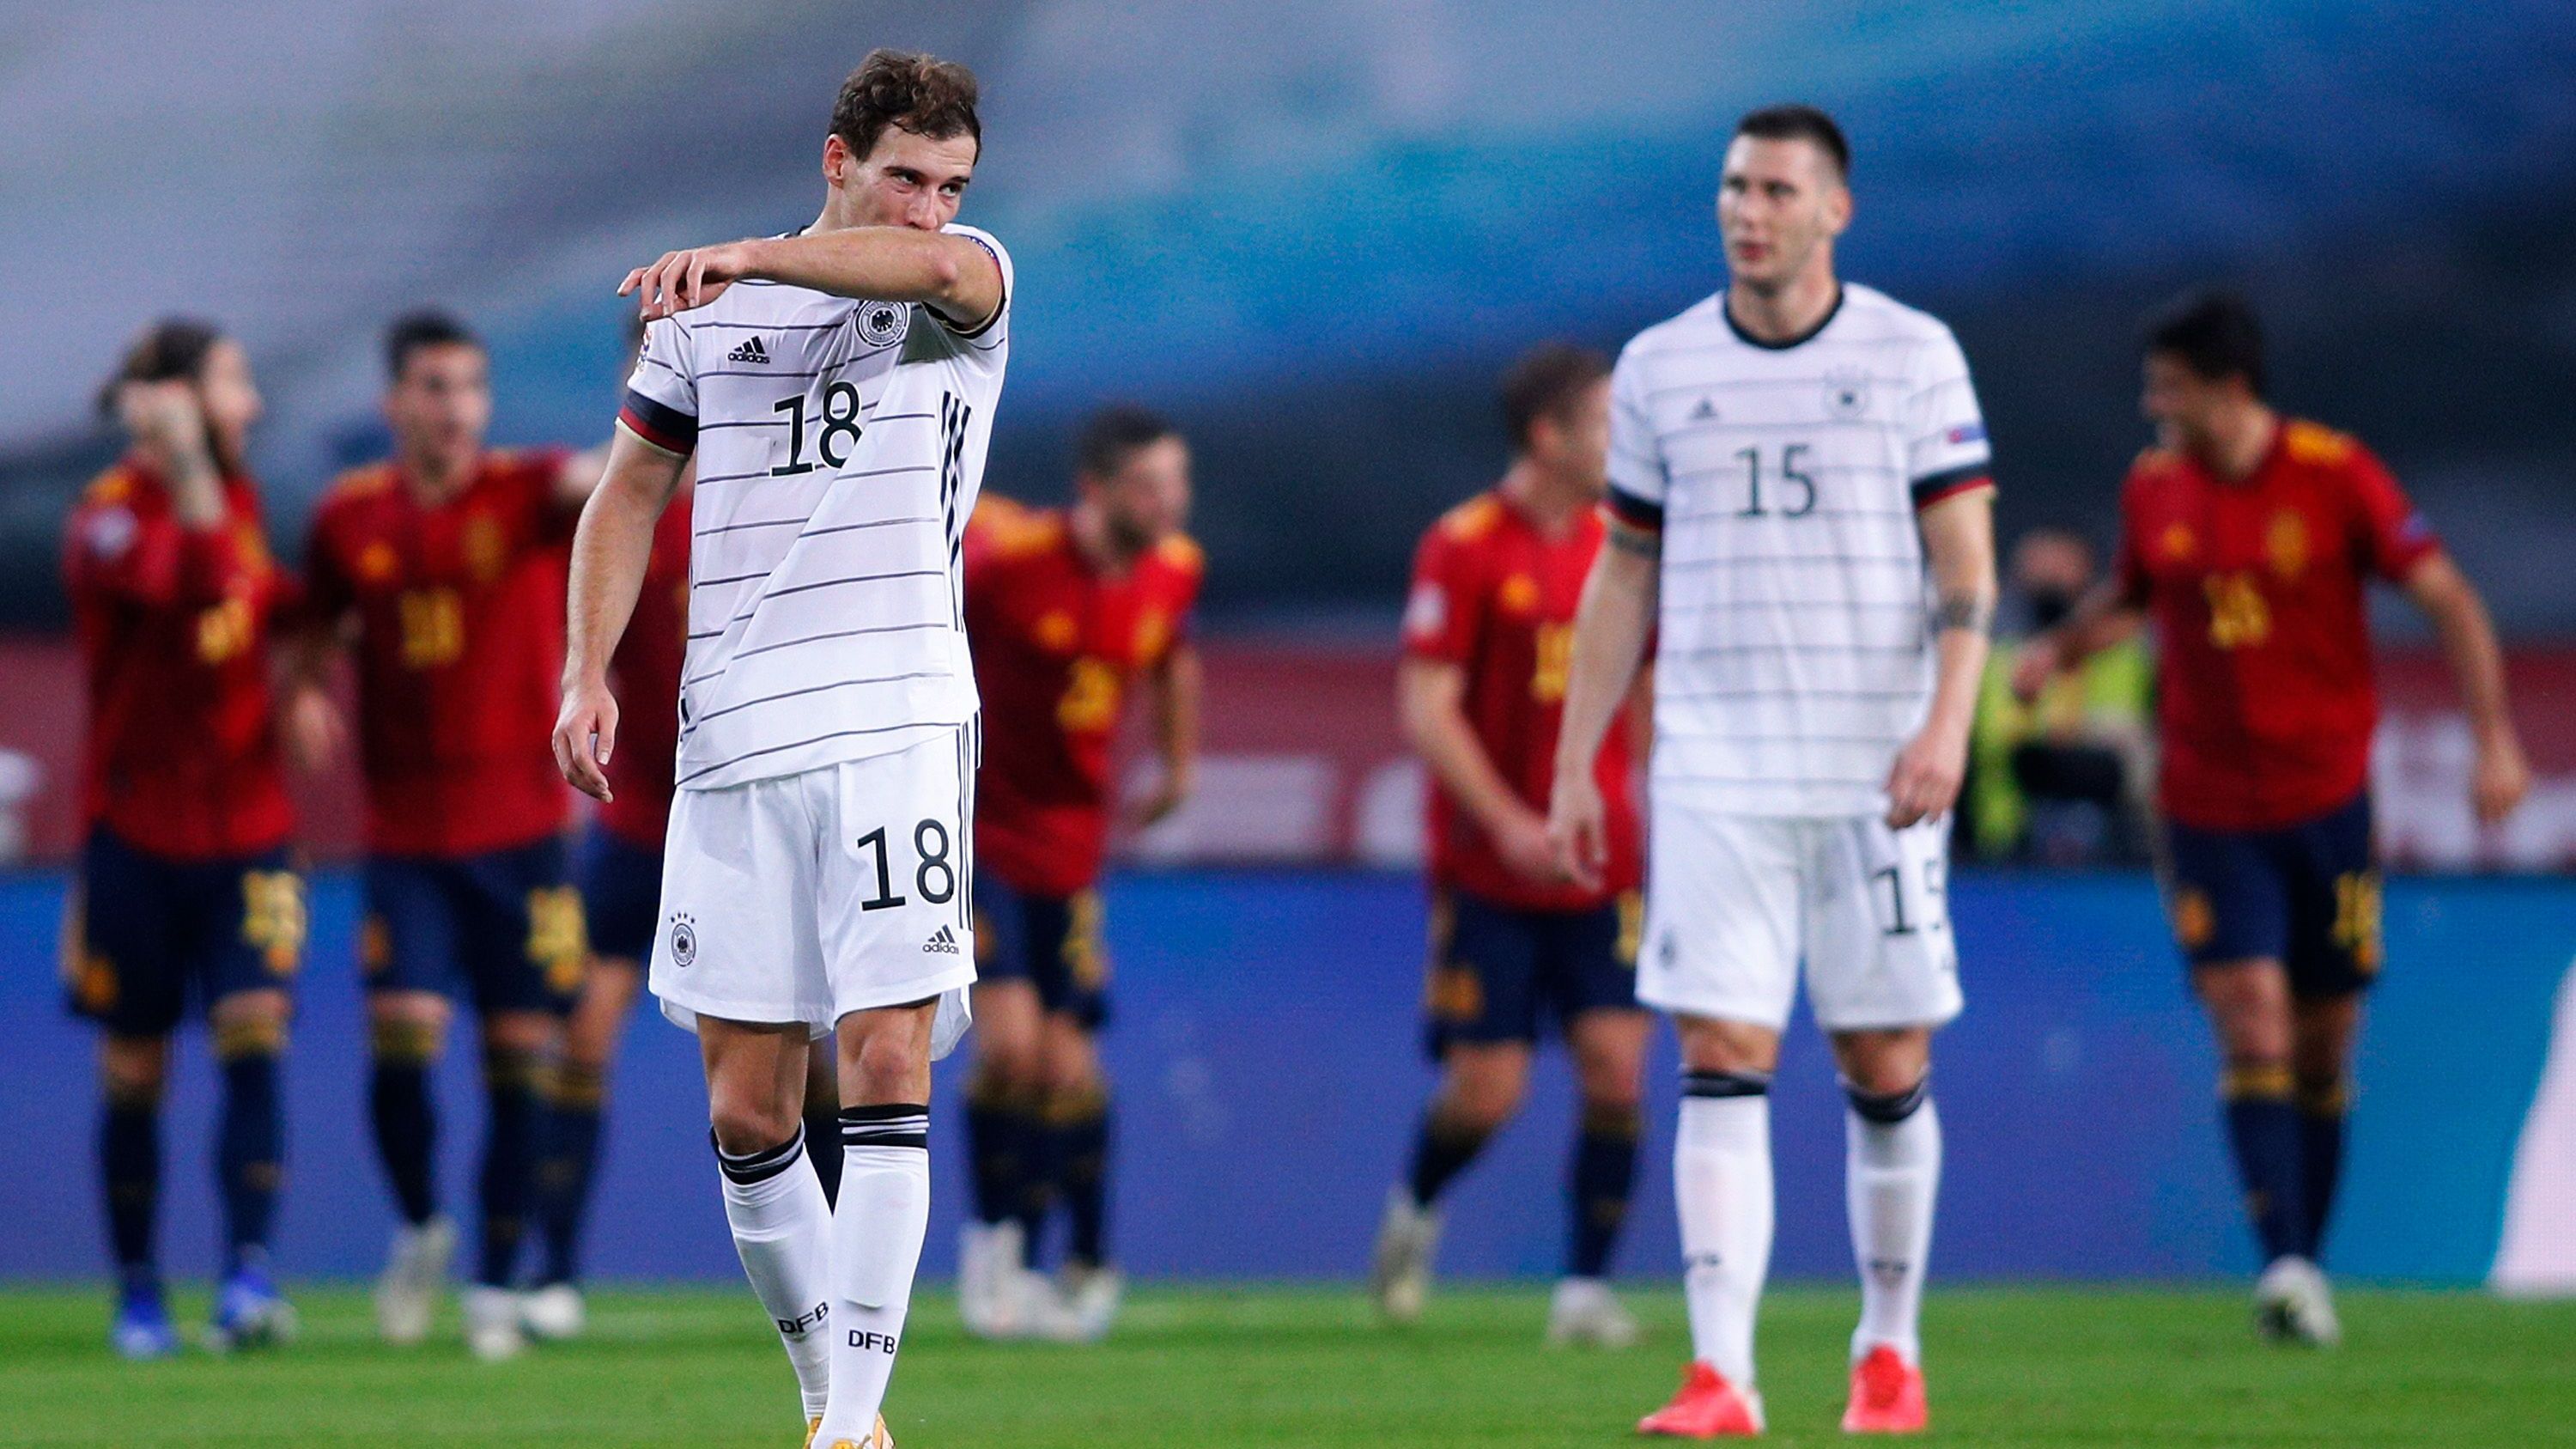 <strong>Nations League 2020/21, 6. Spieltag, Spanien - Deutschland 6:0</strong><br>Zuletzt im Jahr 1931 (!) verlor eine deutsche Nationalmannschaft mit 0:6 - damals gegen Österreich. Mit einer höheren Pleite (0:9) endete nur ein Aufeinandertreffen mit England. Diesmal glänzte Ferran Torres mit drei Treffern, Oyarzabal und Rodri kamen jeweils auf einen Treffer. Auf diese Weise sicherte sich Spanien den Gruppensieg, Deutschland wurde Zweiter.